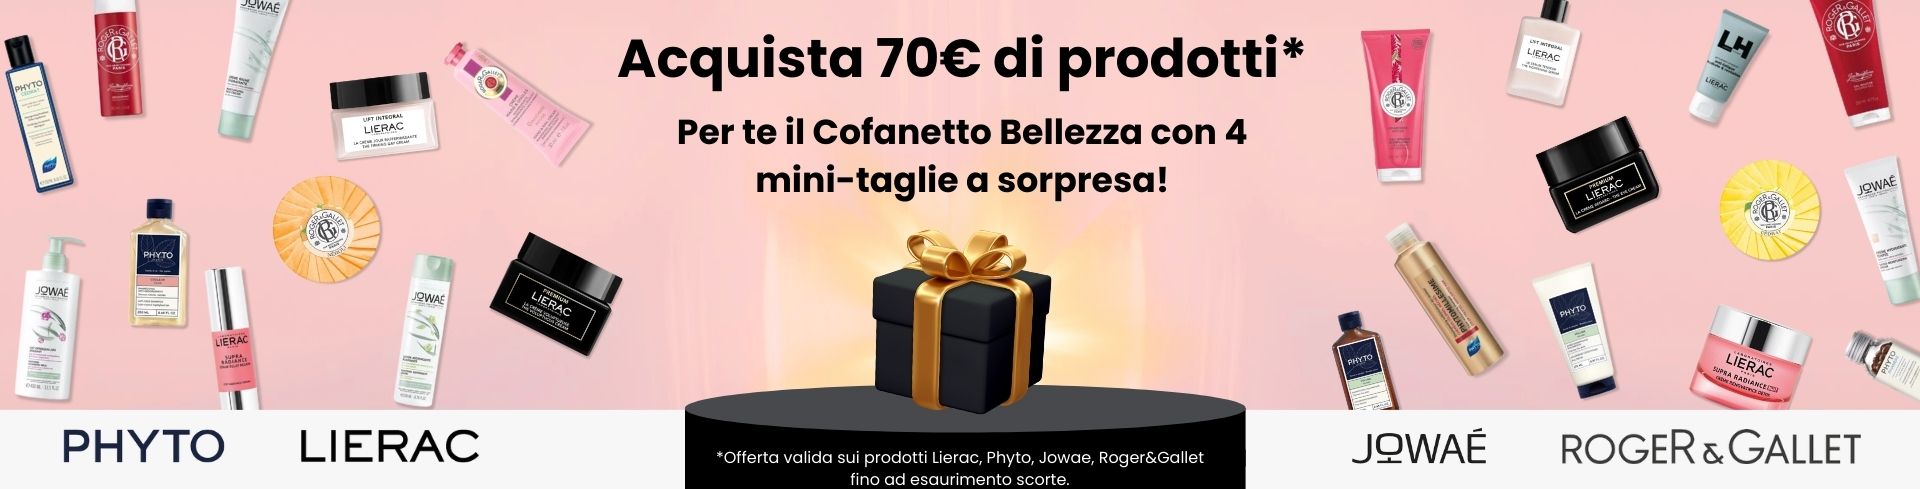 Promo Cofanetto bellezza: Ricevilo in regalo all'acquisto di 70€ di prodotti tra Lierac, Phyto, Roger&Gallet e Jowae!